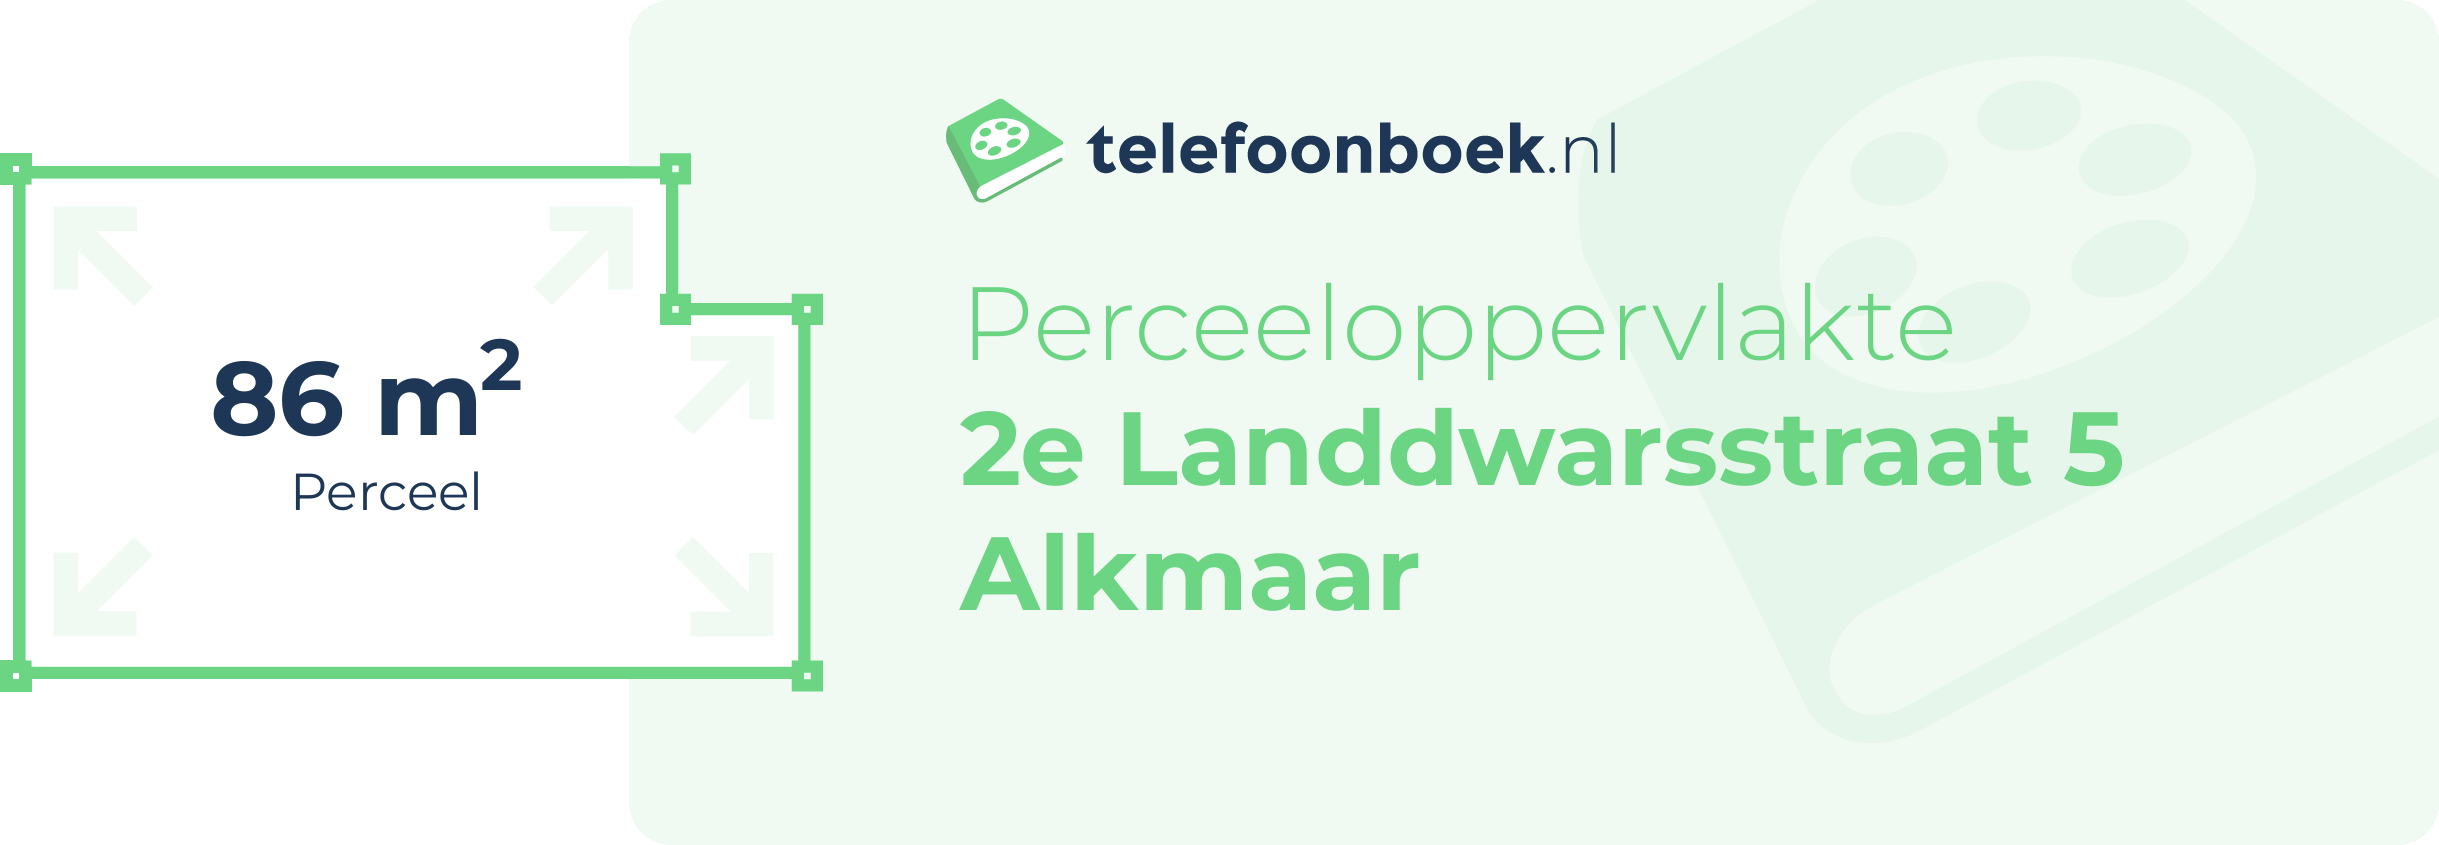 Perceeloppervlakte 2e Landdwarsstraat 5 Alkmaar